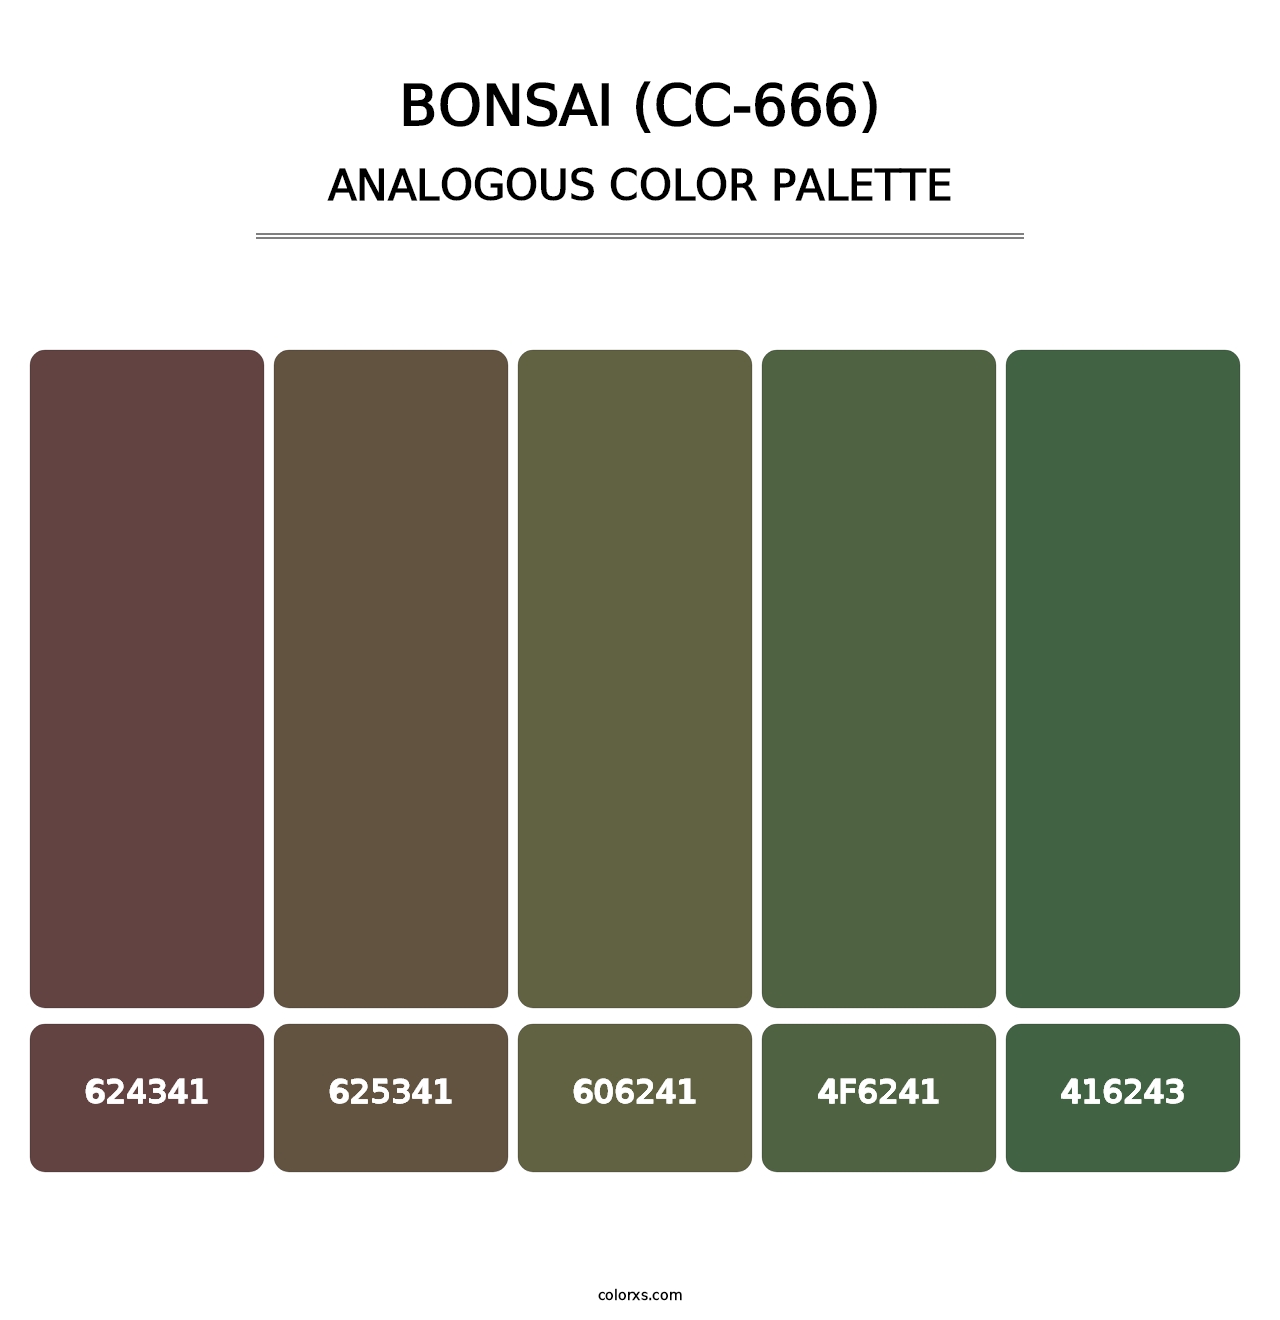 Bonsai (CC-666) - Analogous Color Palette